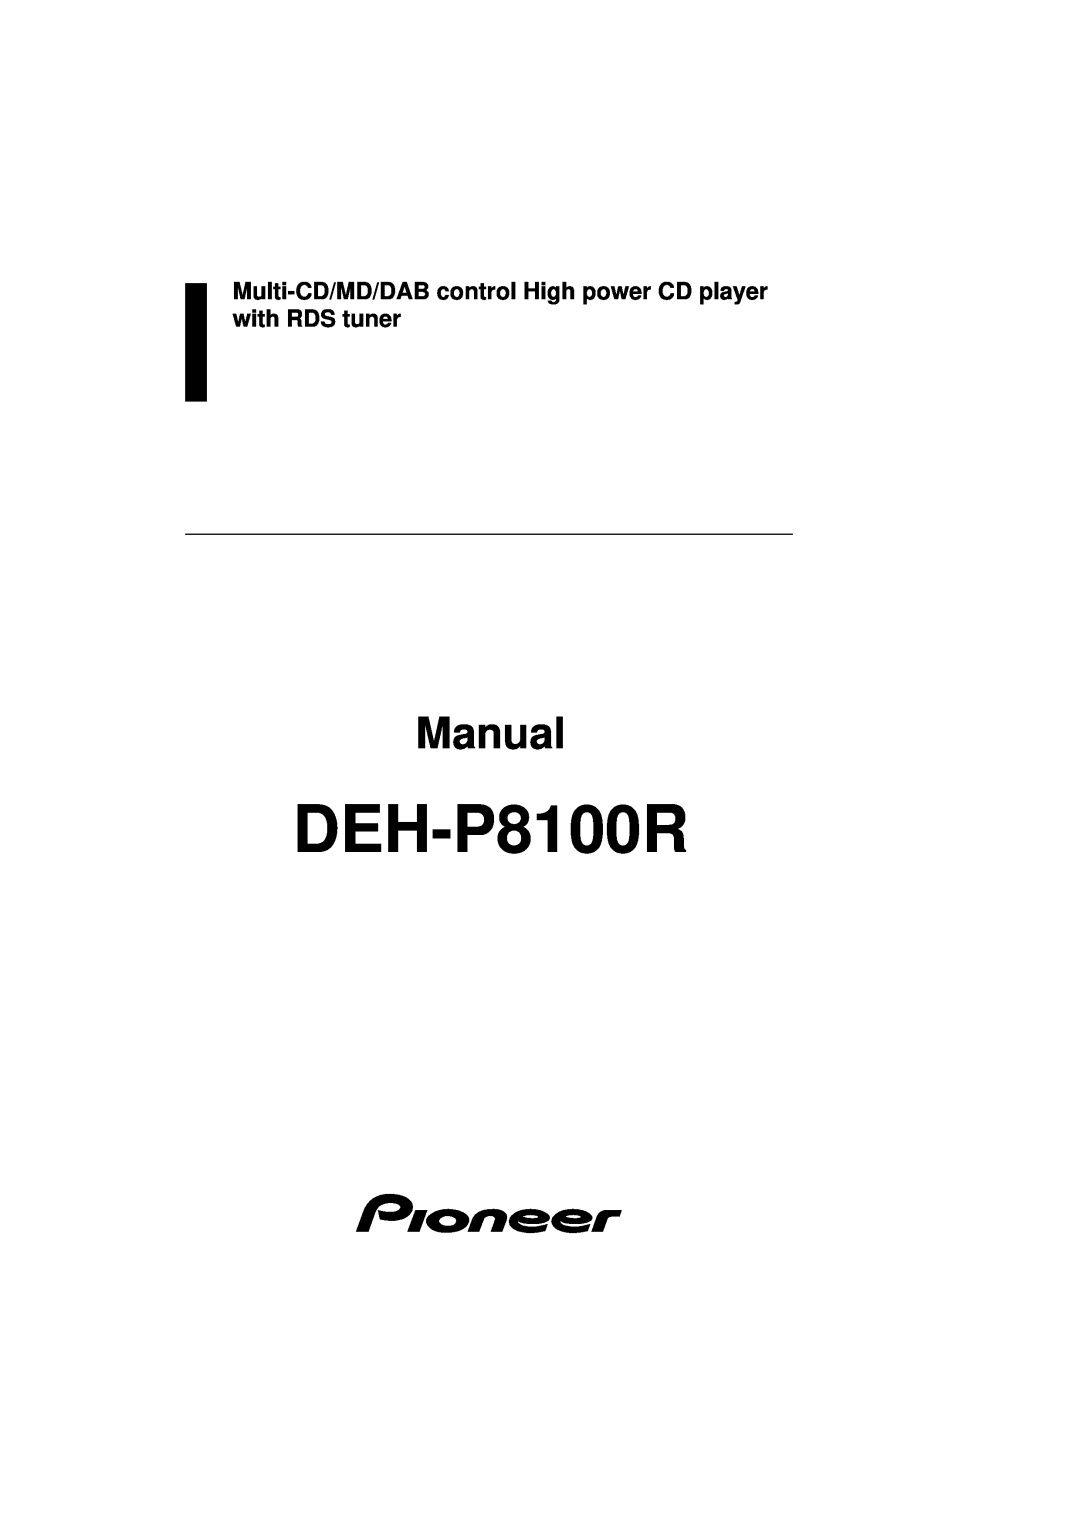 Pioneer DEH-P8100R manual Manual 